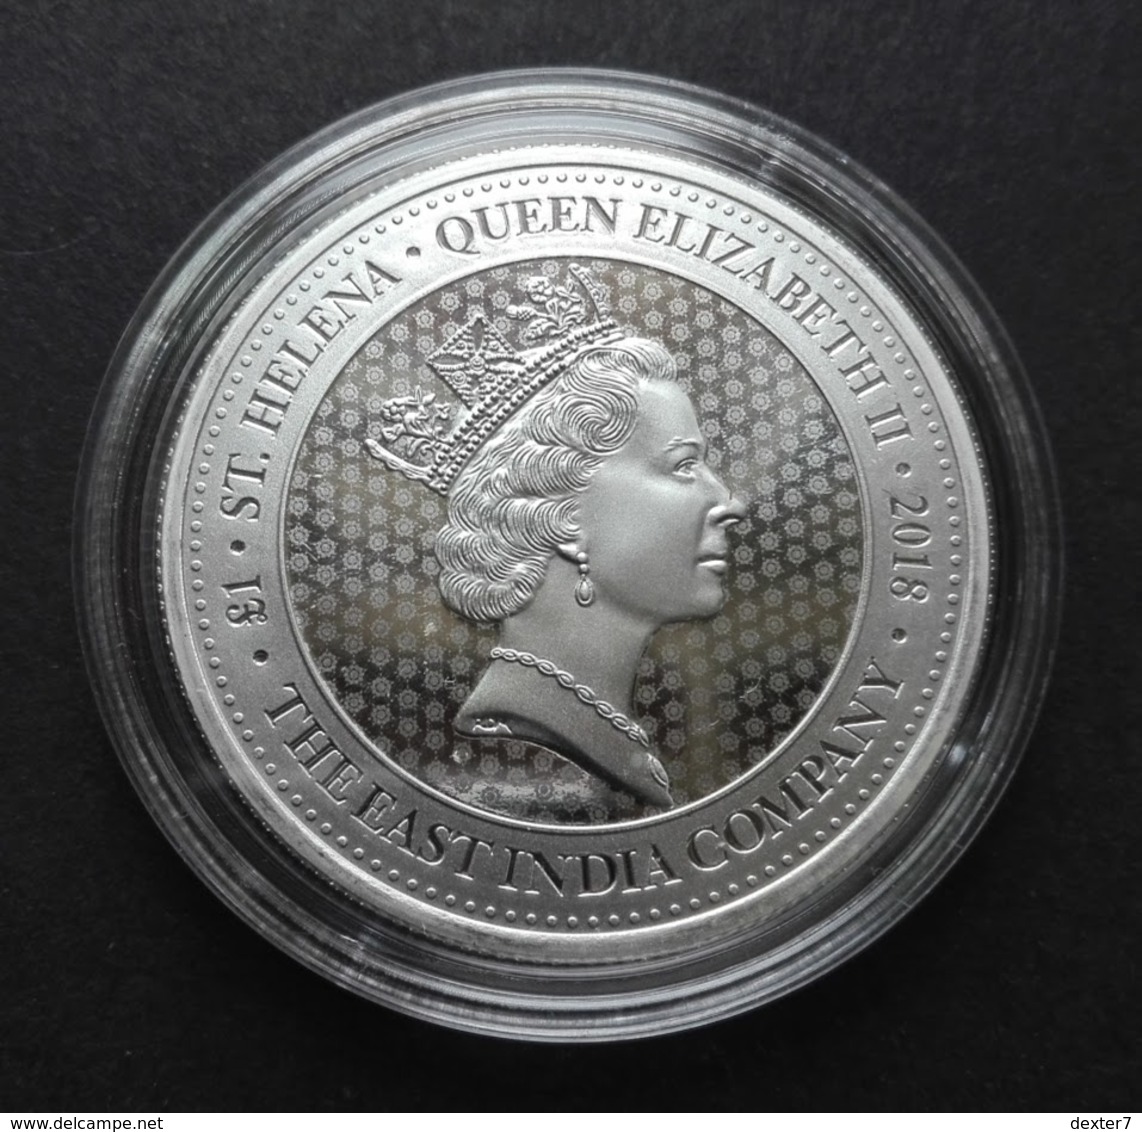 St. Helena, 1 Oz Spade Guinea East India Co. 2018 Silver 999 Pure - 1 Oncia Argento Puro Bullion - Sant'Elena